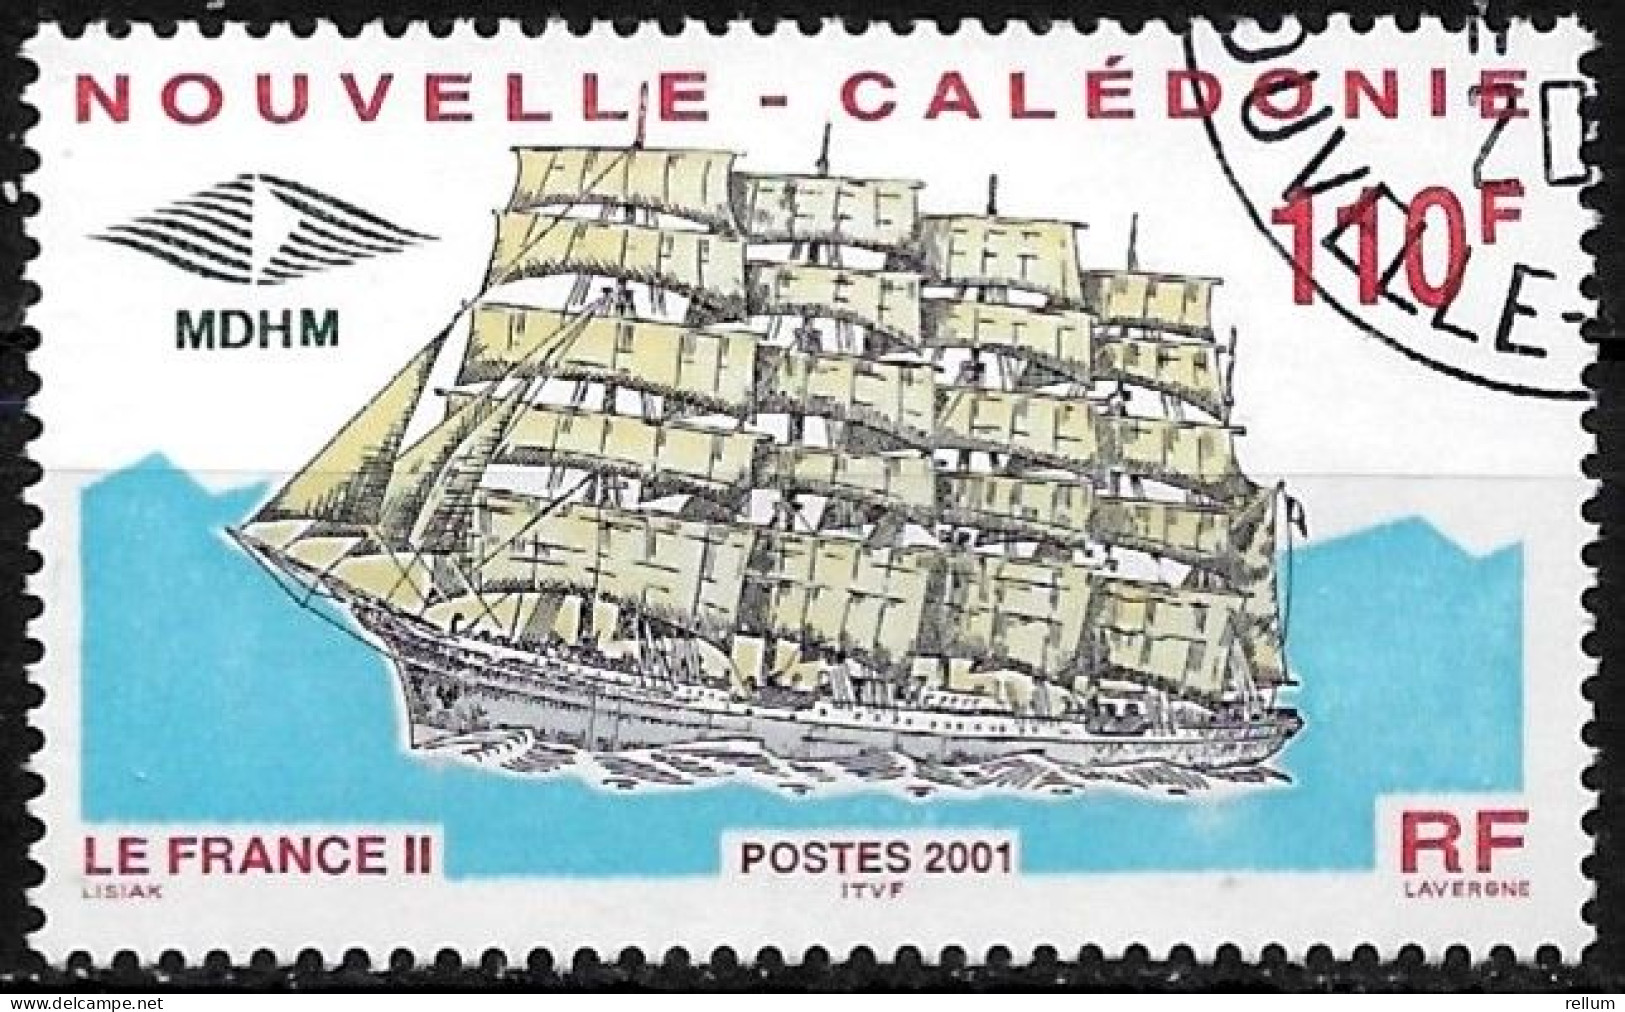 Nouvelle Calédonie 2001 - Yvert Et Tellier Nr. 839 - Michel Nr. 1233 Obl. - Oblitérés